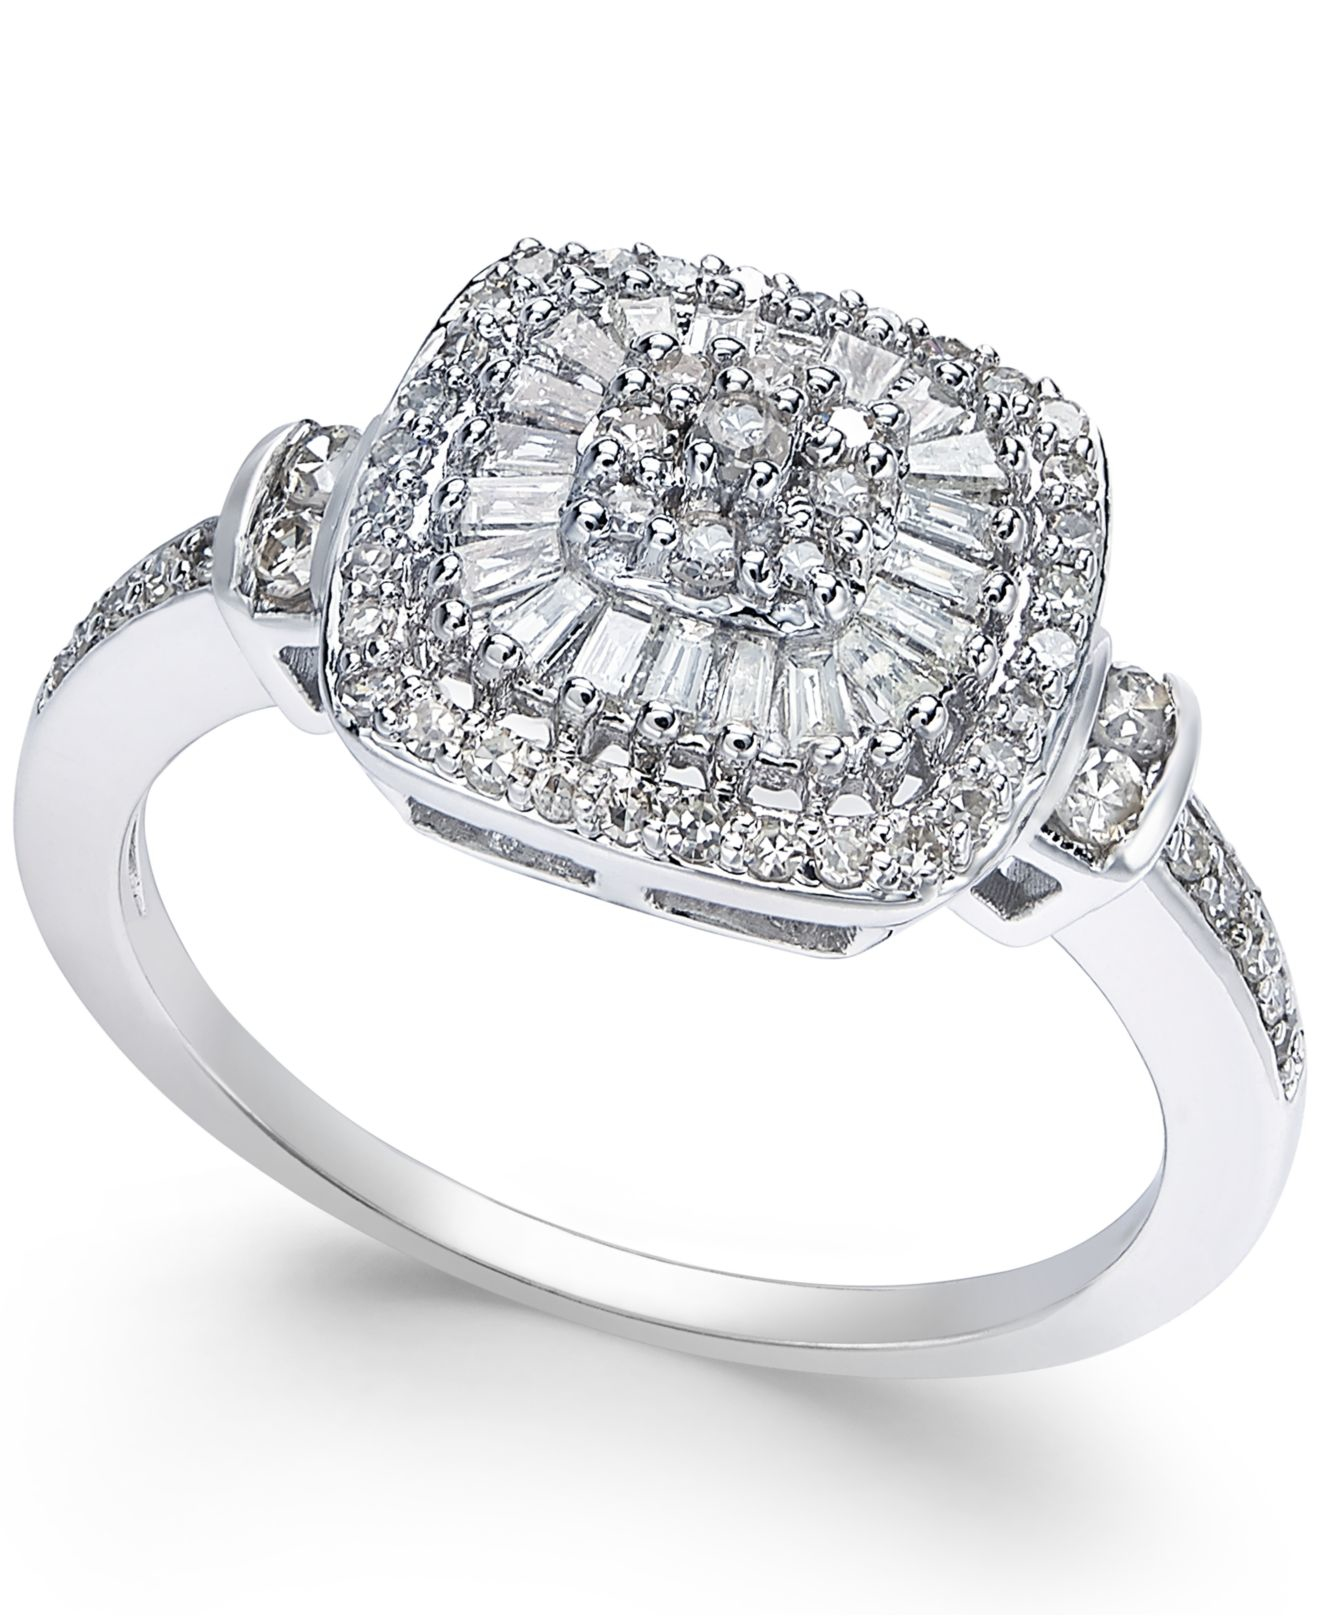 Vintage Inspired Diamond Rings 8